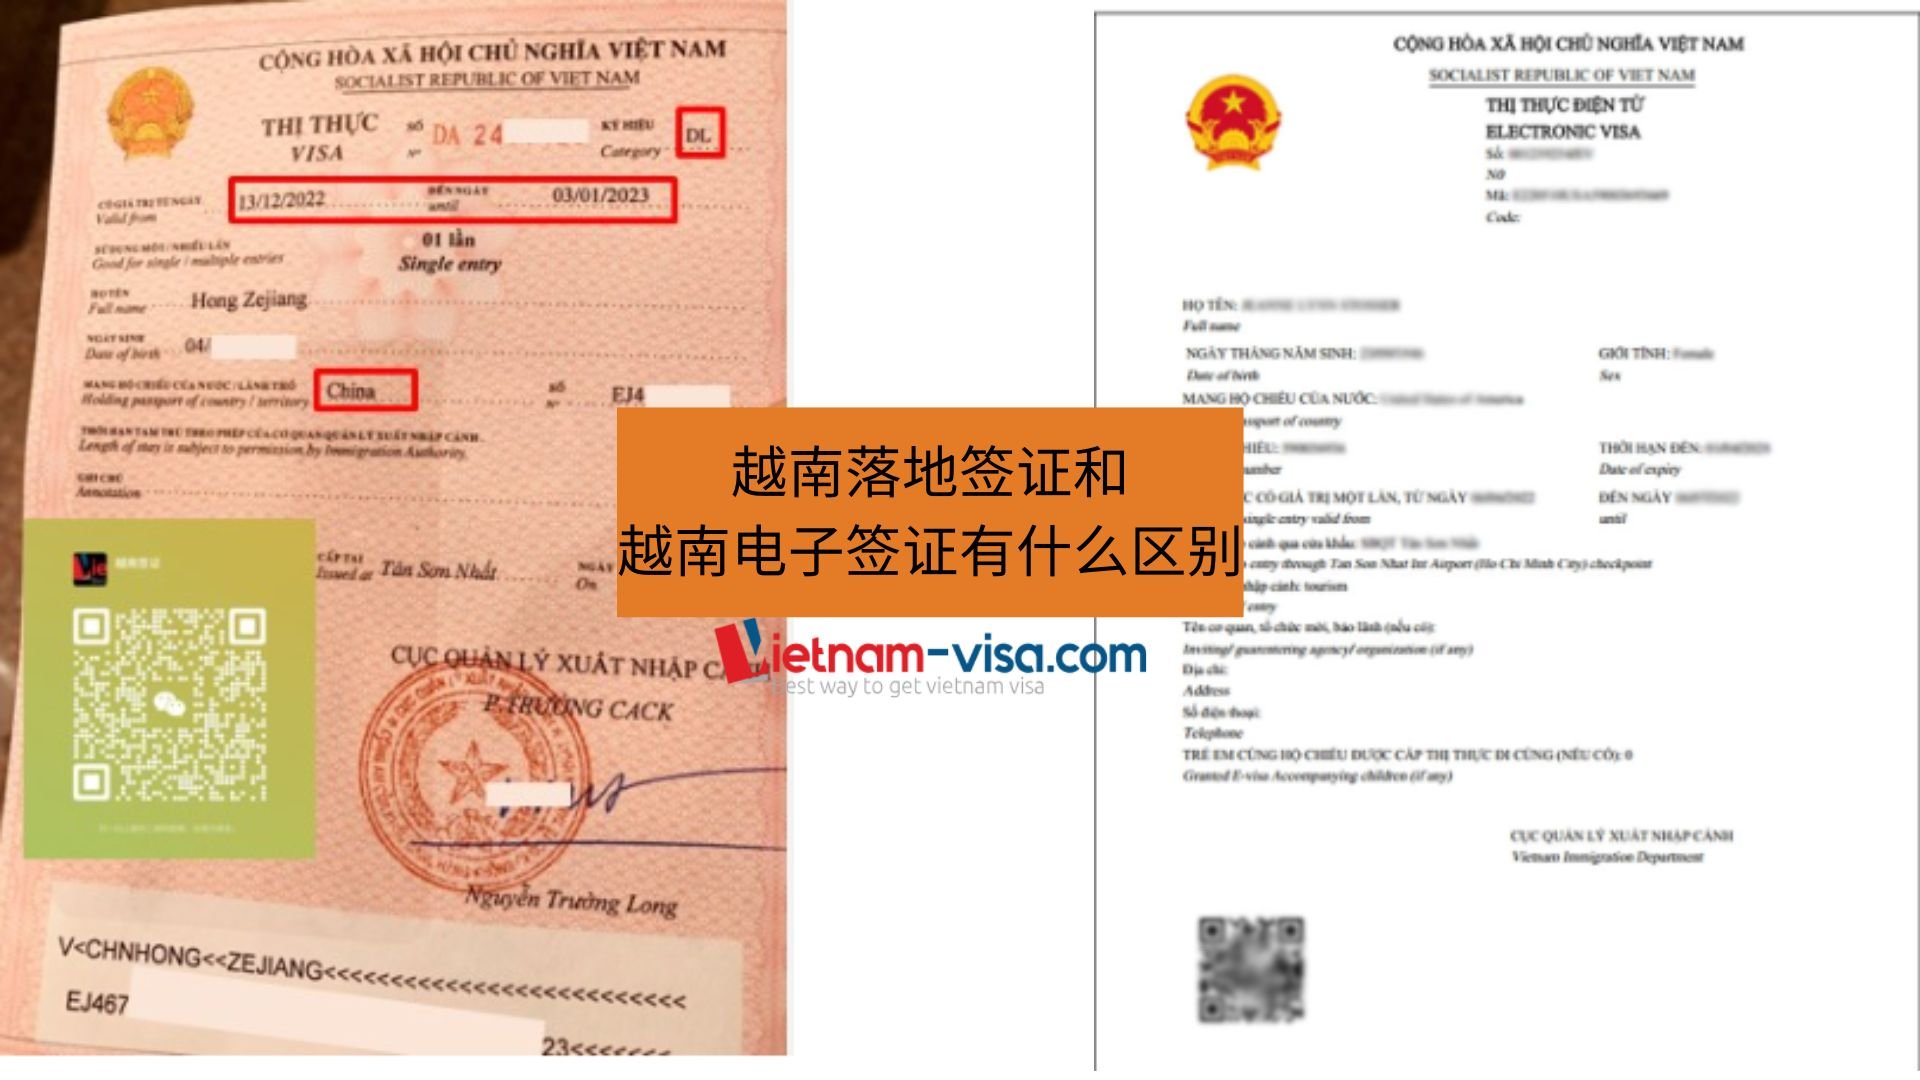 越南电子签证和越南落地签证有什么区别？|Evisa 和 VOA visa|